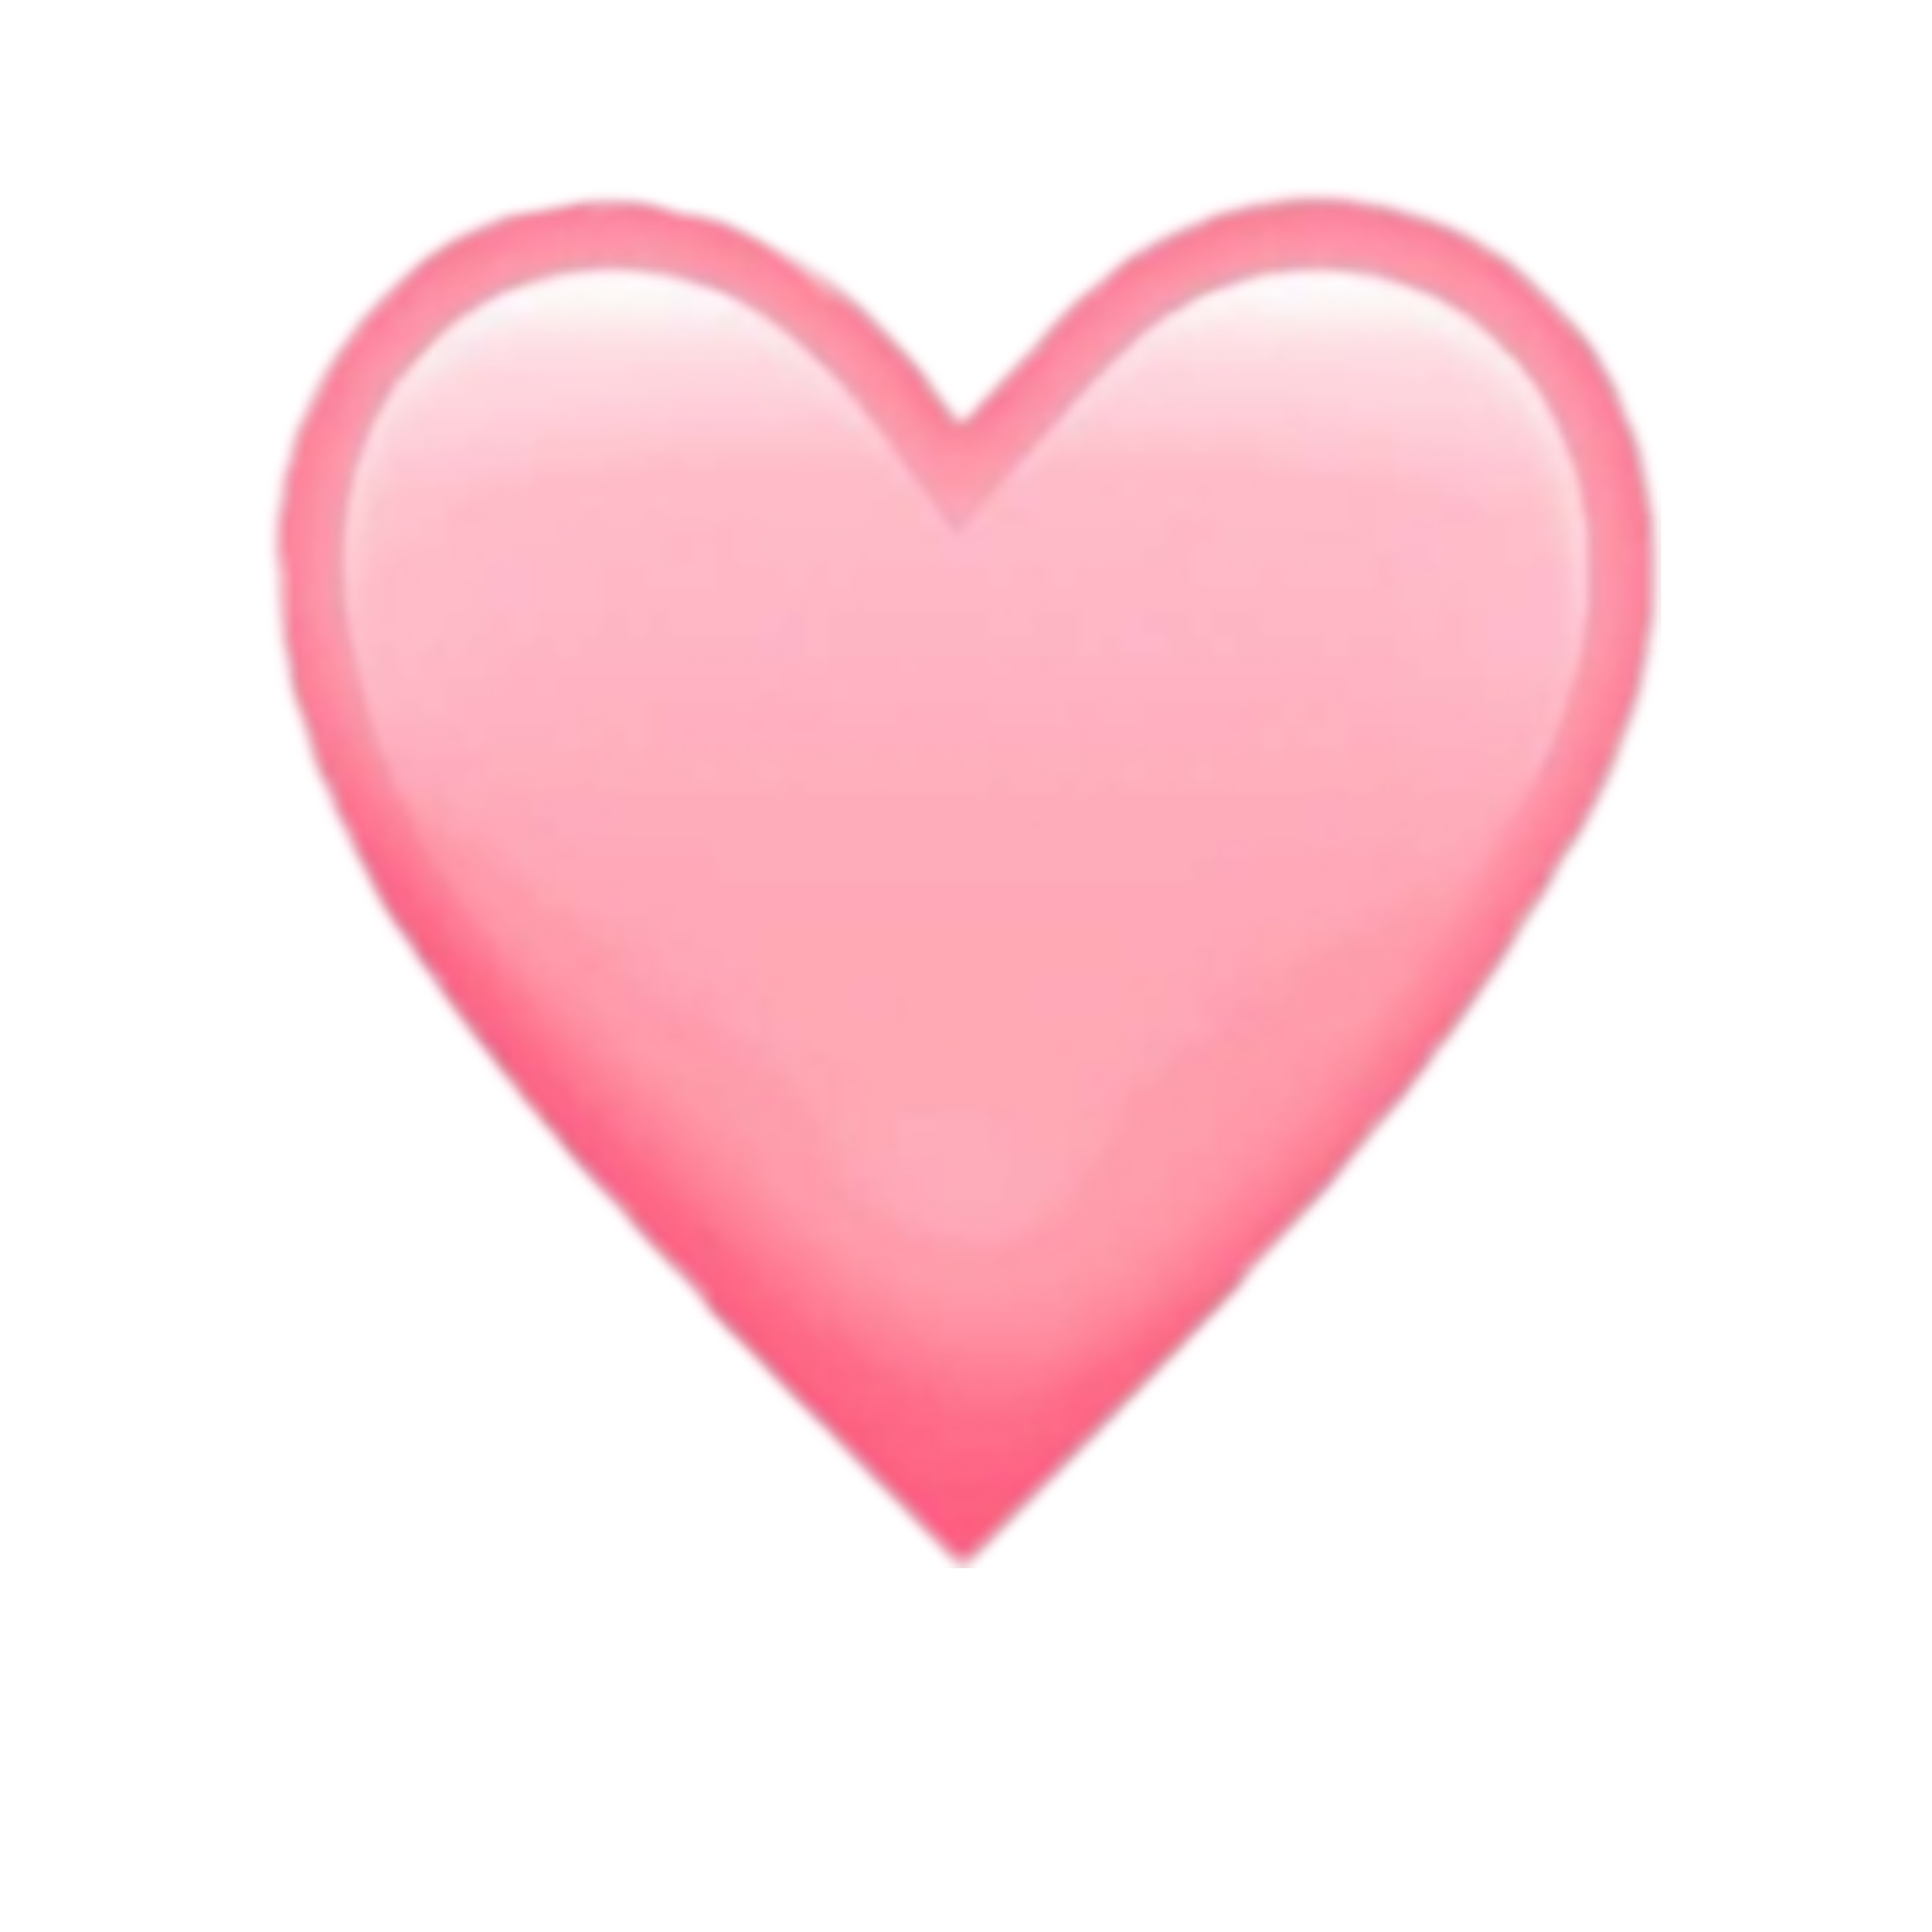 emoji symbols copy and paste heart